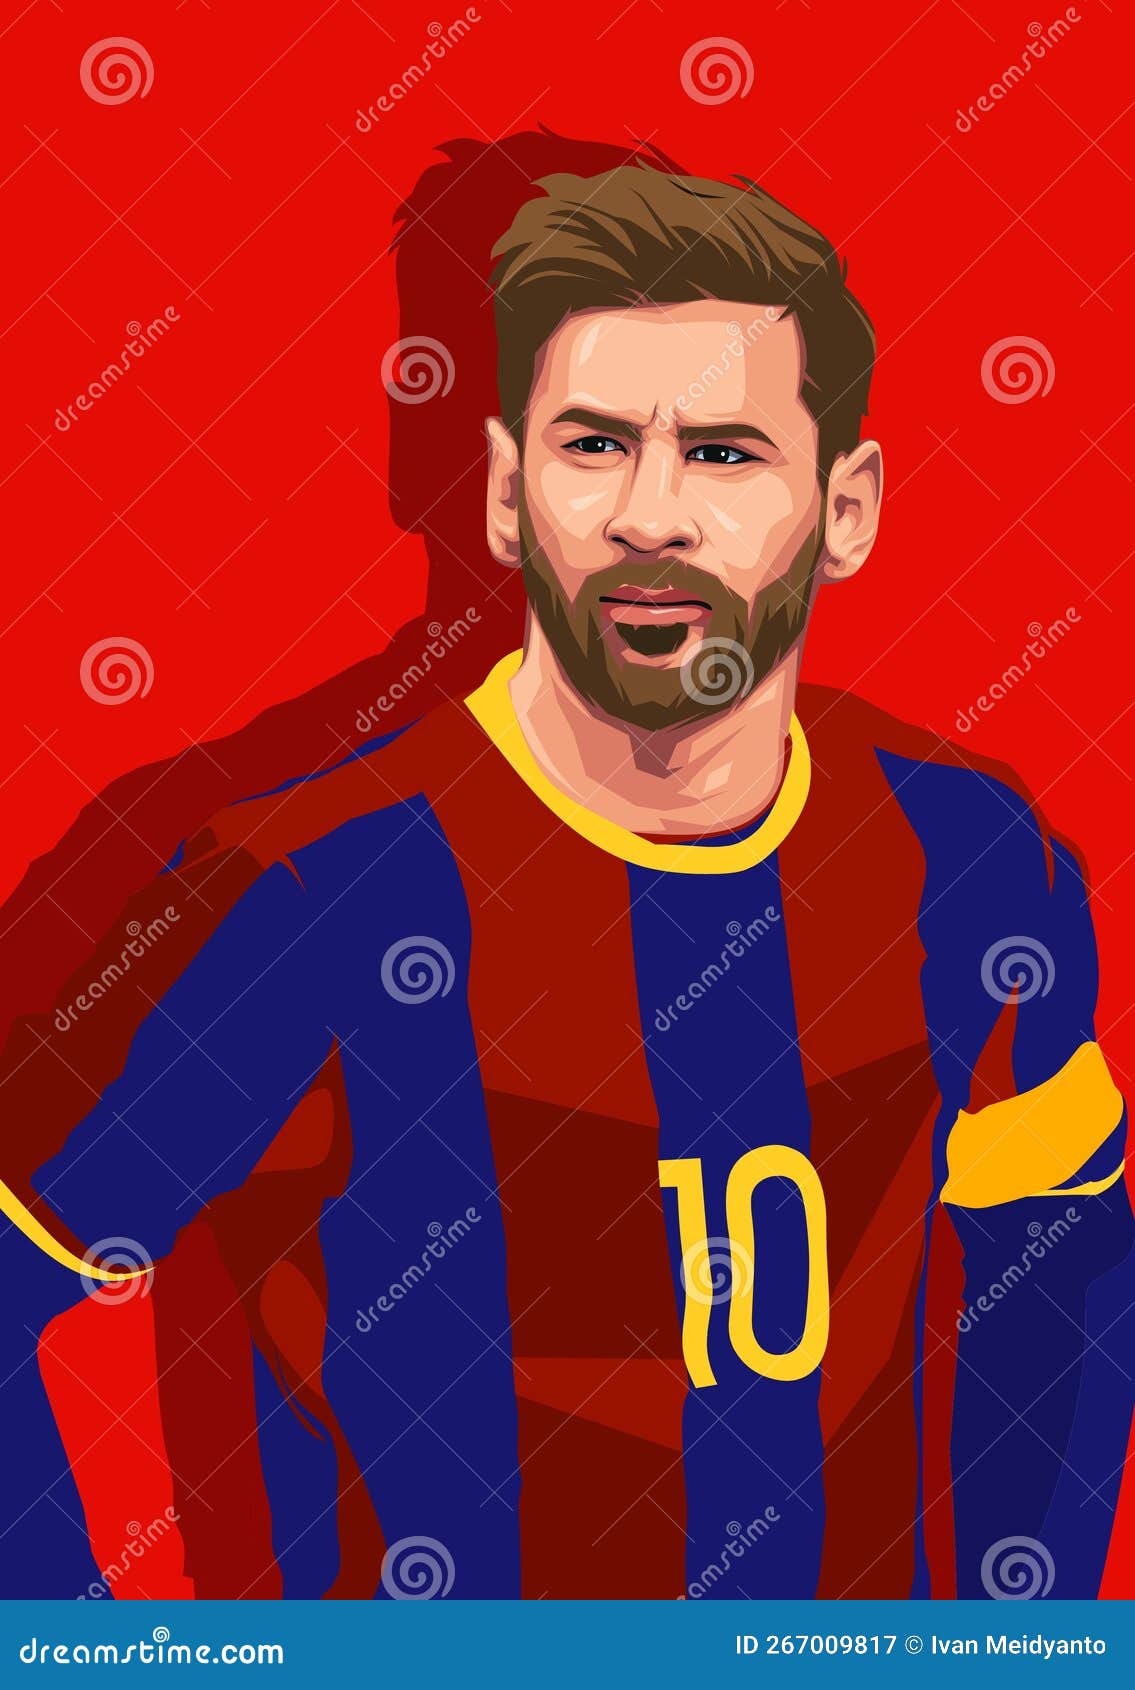 Messi Caricature Stock Illustrations – 18 Messi Caricature Stock  Illustrations, Vectors & Clipart - Dreamstime